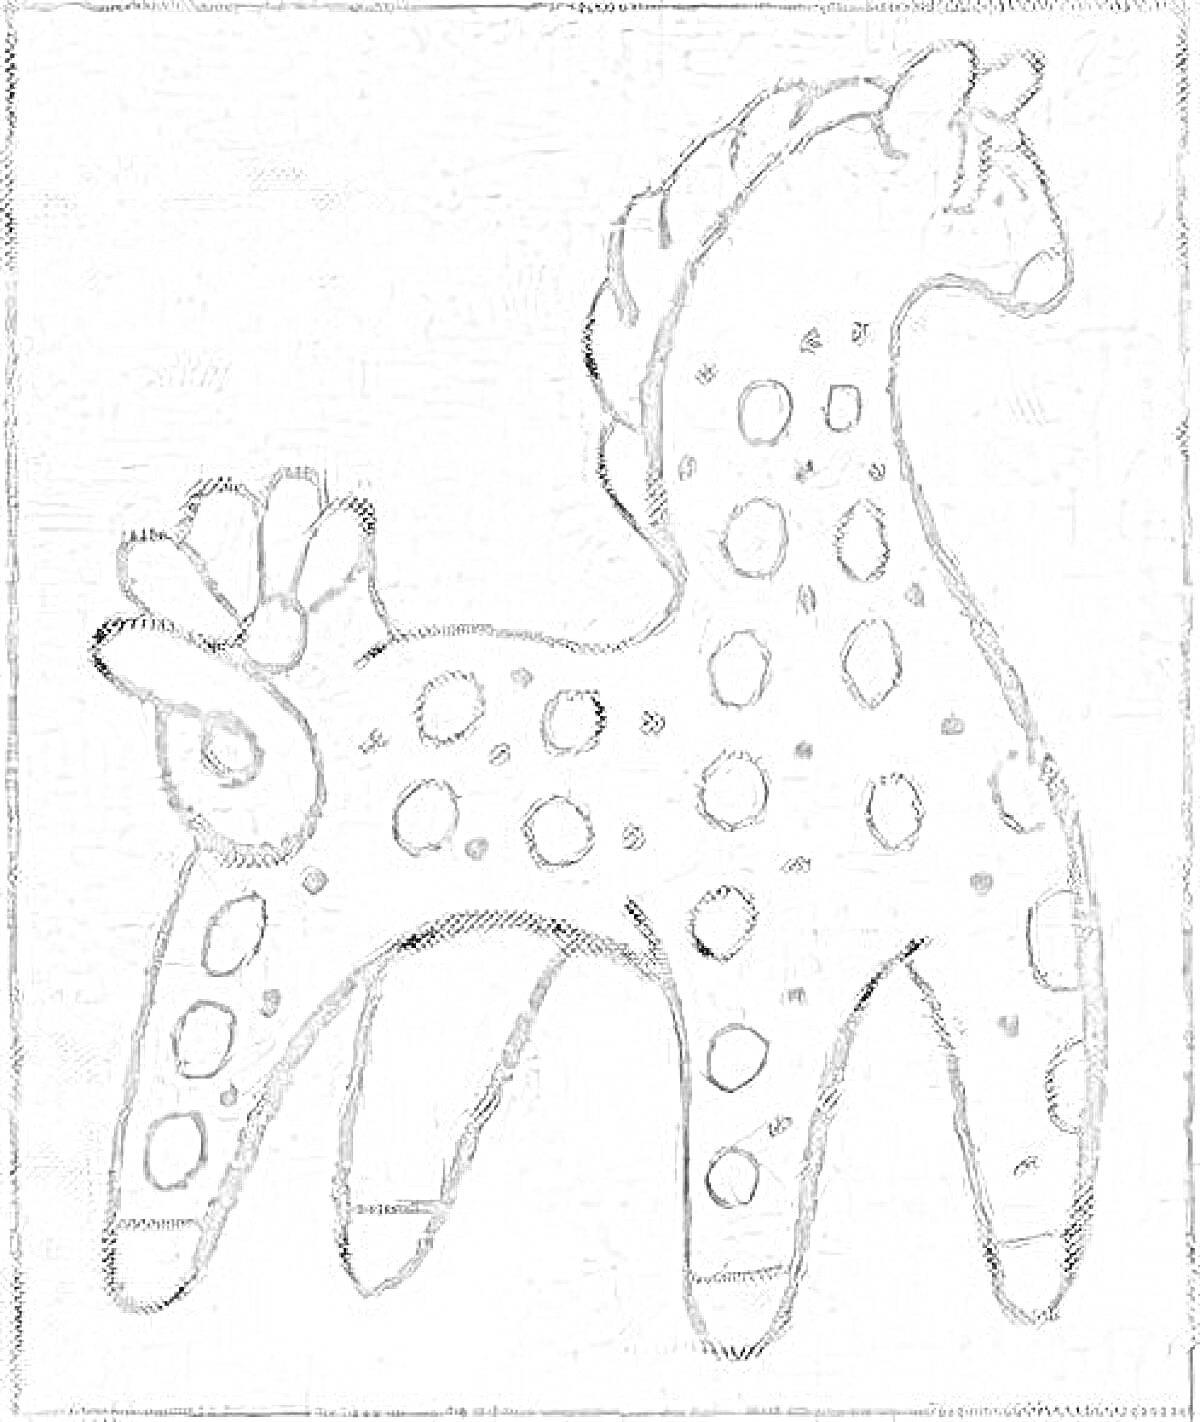 Раскраска Дымковская лошадка с кружочками на теле и хвостом из трех элементов